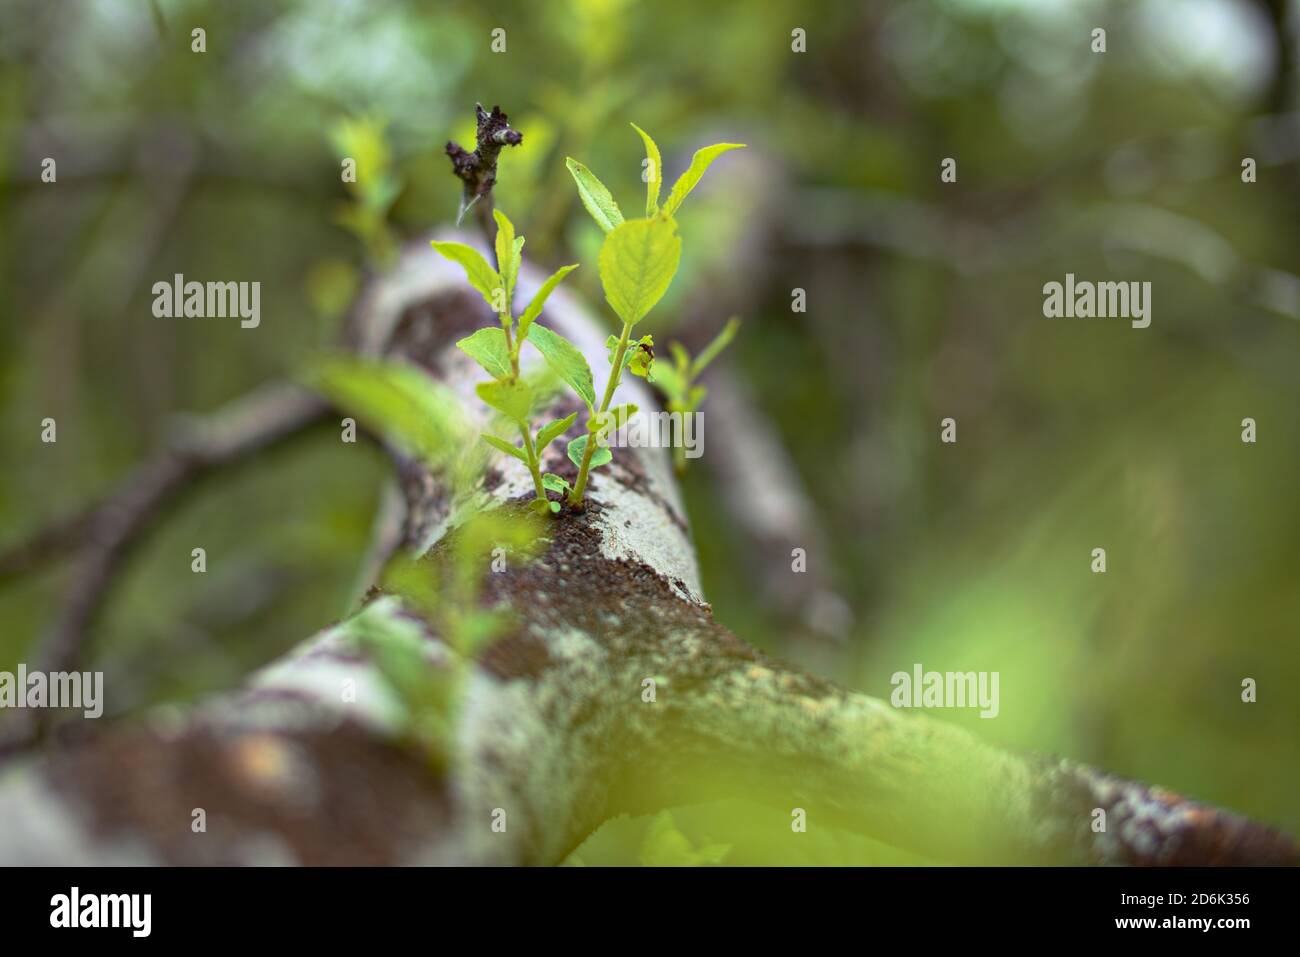 Brotes de Salix myrsinifolia, el sauce de mirsine-leaved, creciendo a partir de un árbol caído. Foto de stock